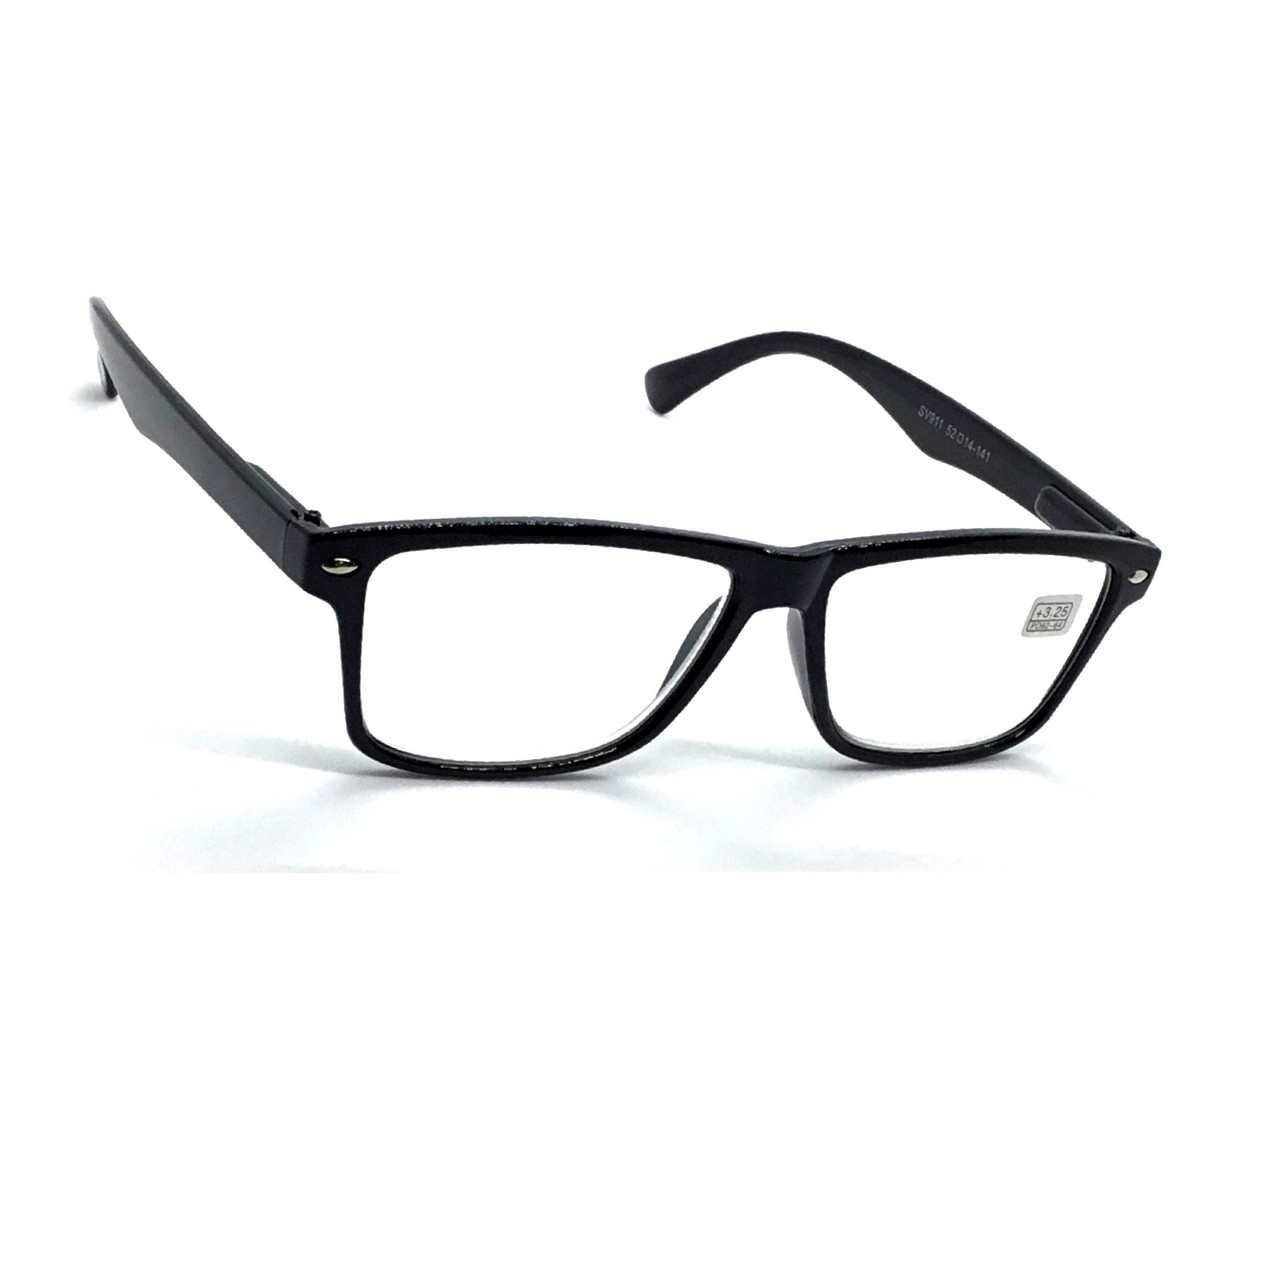 Пластикові окуляри стилю Ray Ban 911 мінус -2.0